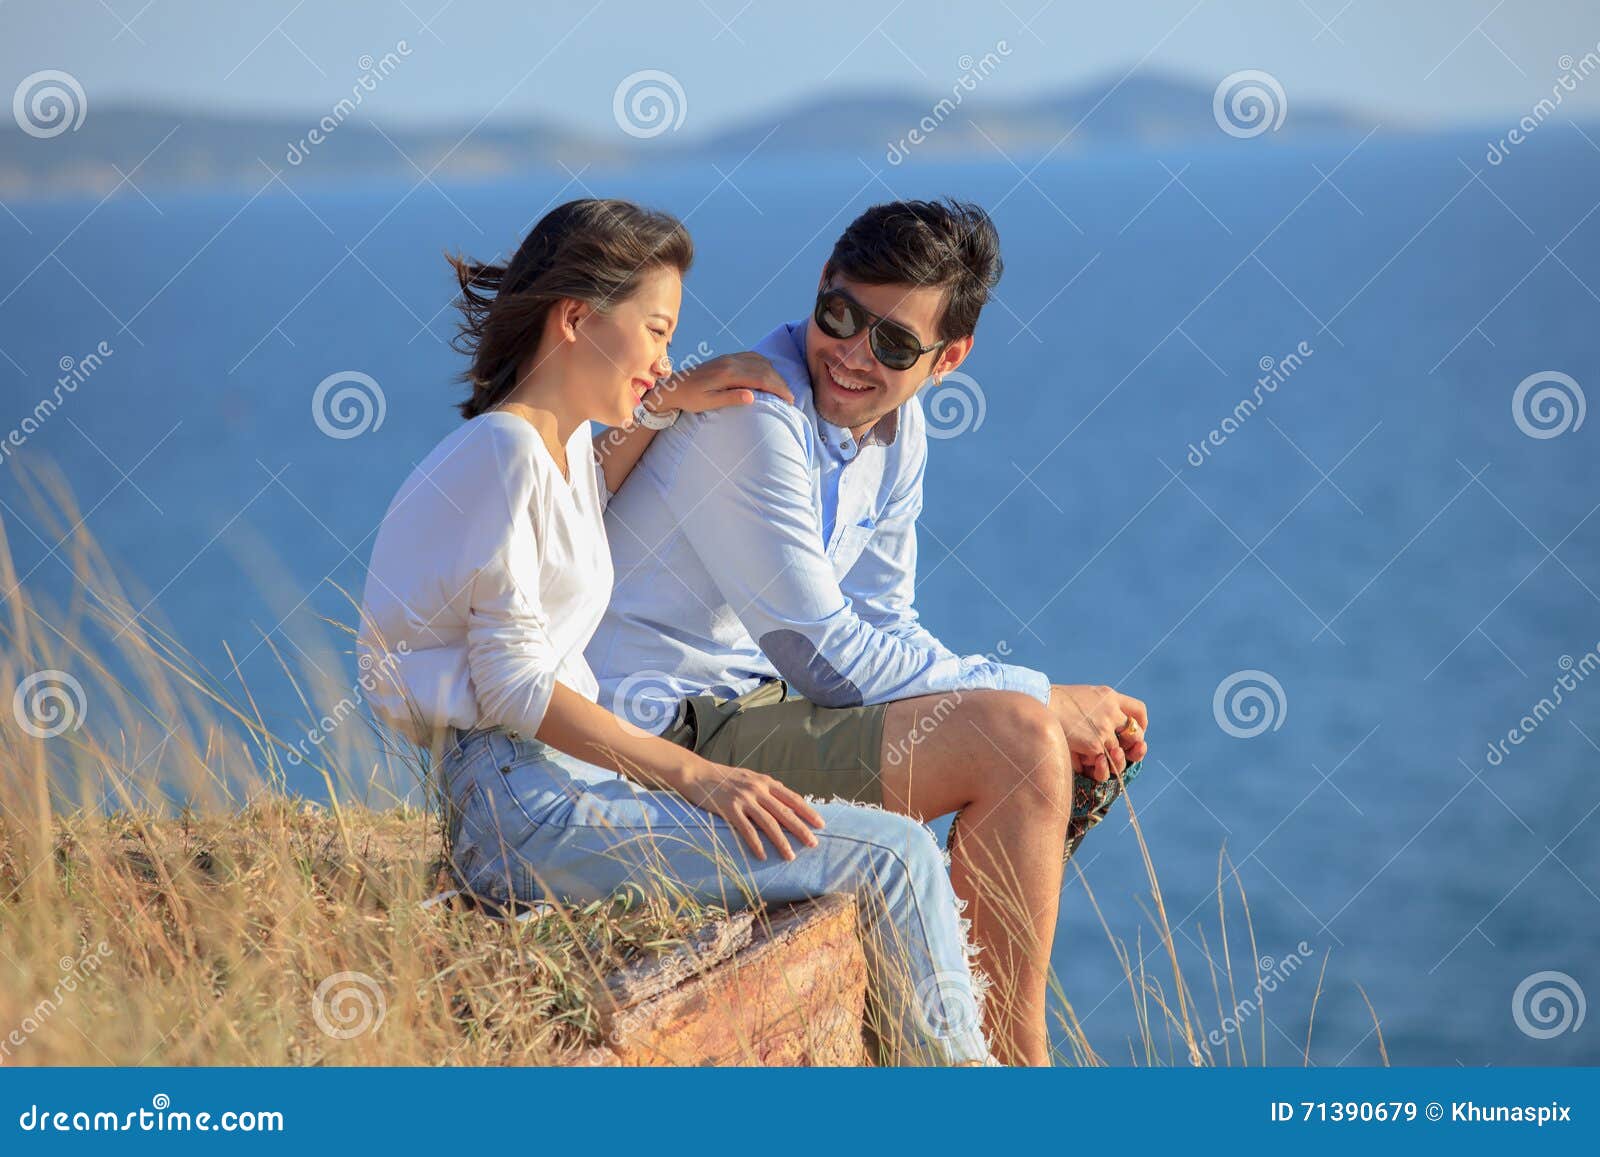 Women and men can. Мужчина и женщина спиной друг к другу. Расслабленная женщина с мужчиной. Счастье эмоция. Идеальная пара фото.